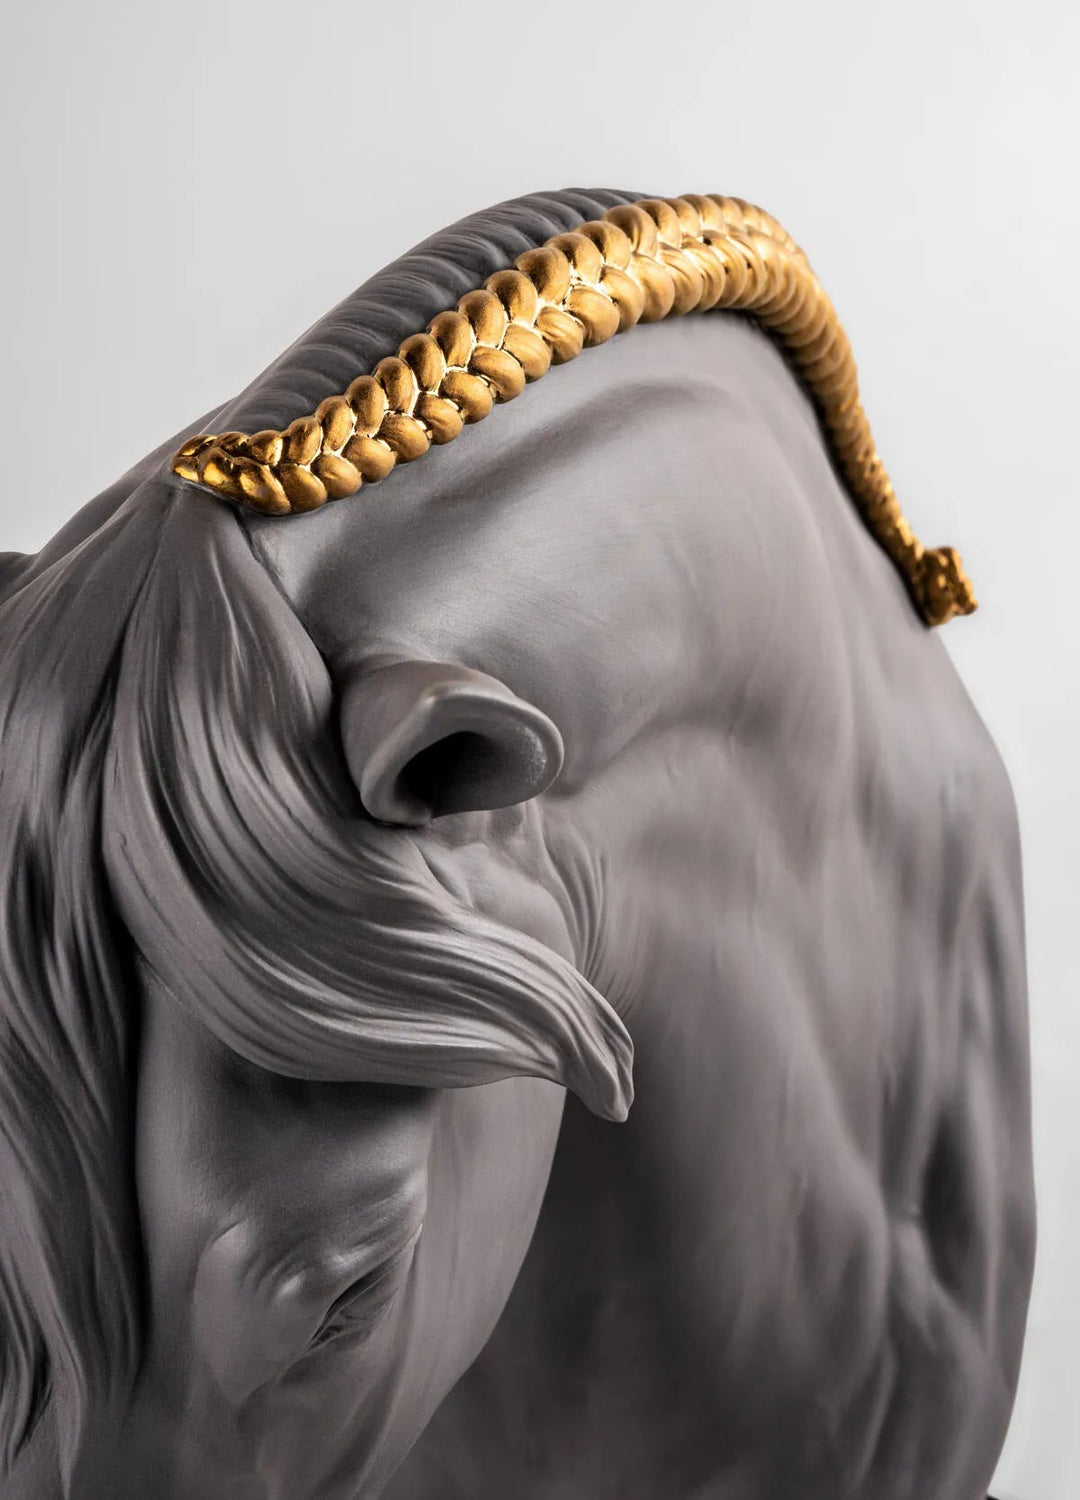 LLADRO® Equinus Sculpture Pferde Büste 38x21x40cm 01009724 2023-010-09724